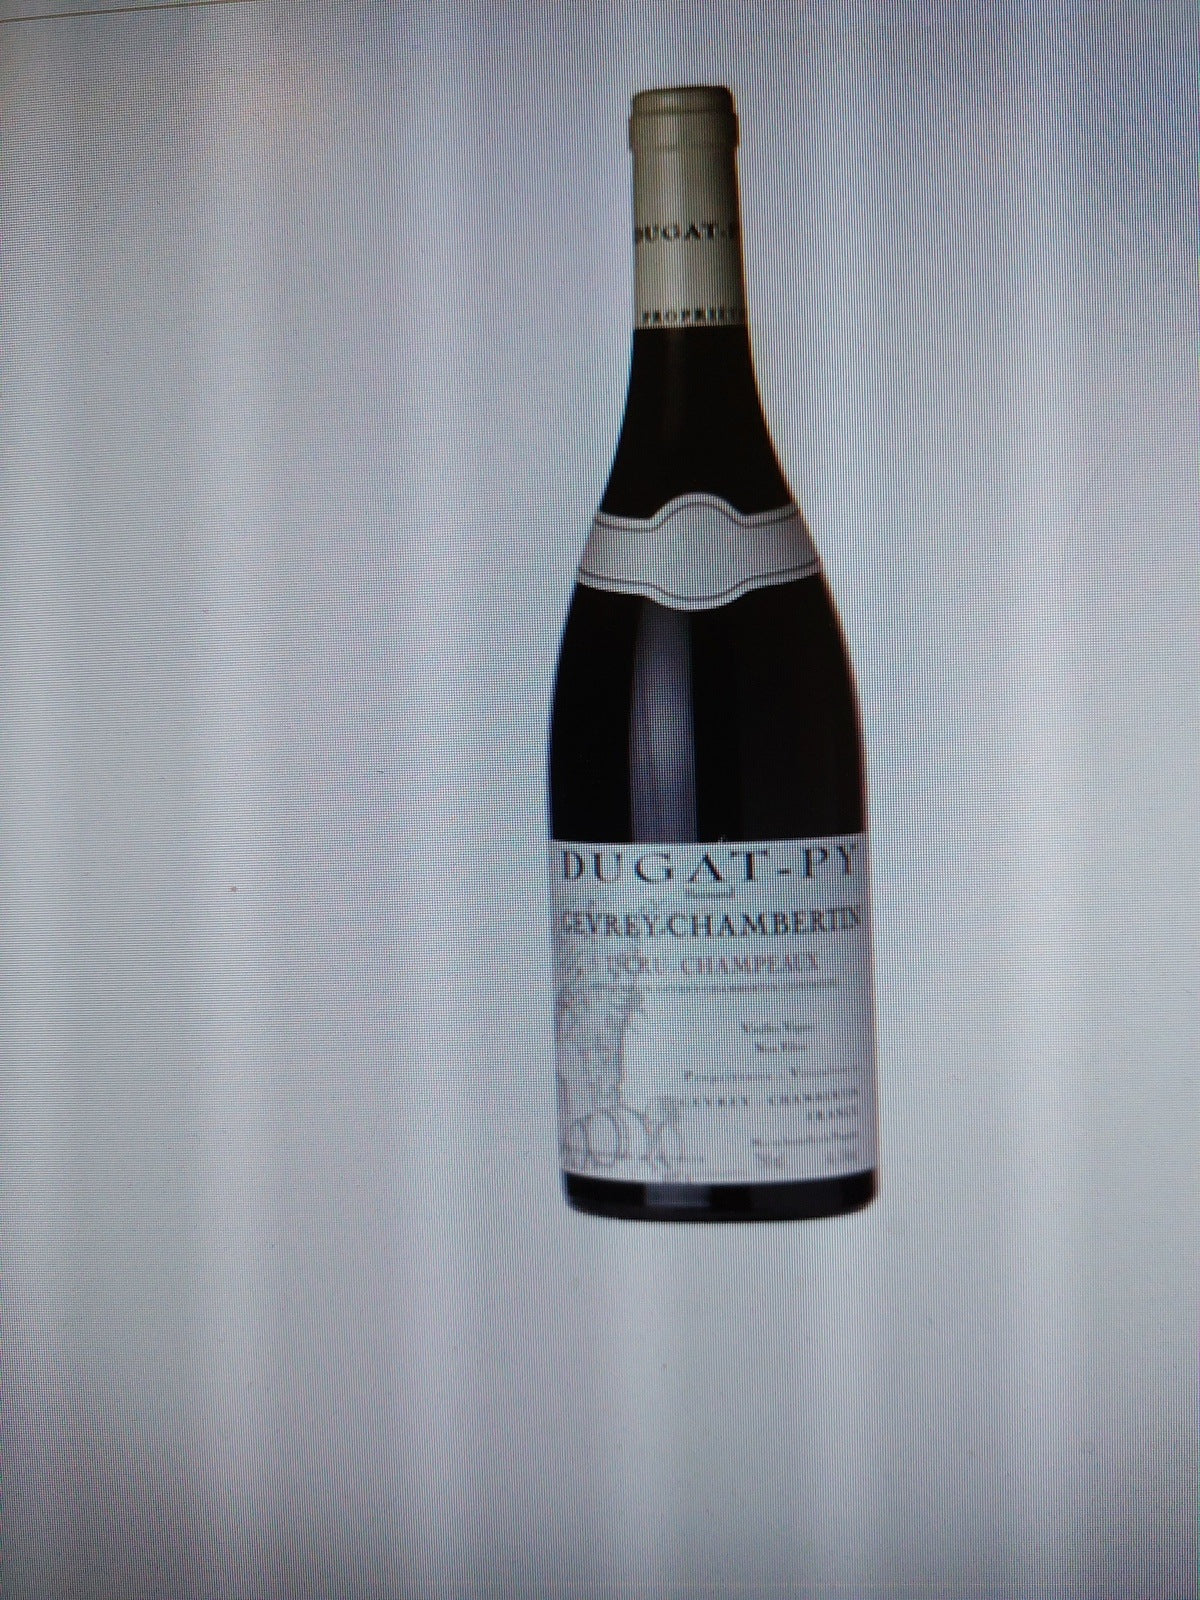 2011 Domaine Dugat-Py Champeaux Vieilles Vignes Gevrey-Chambertin Premier Cru, France